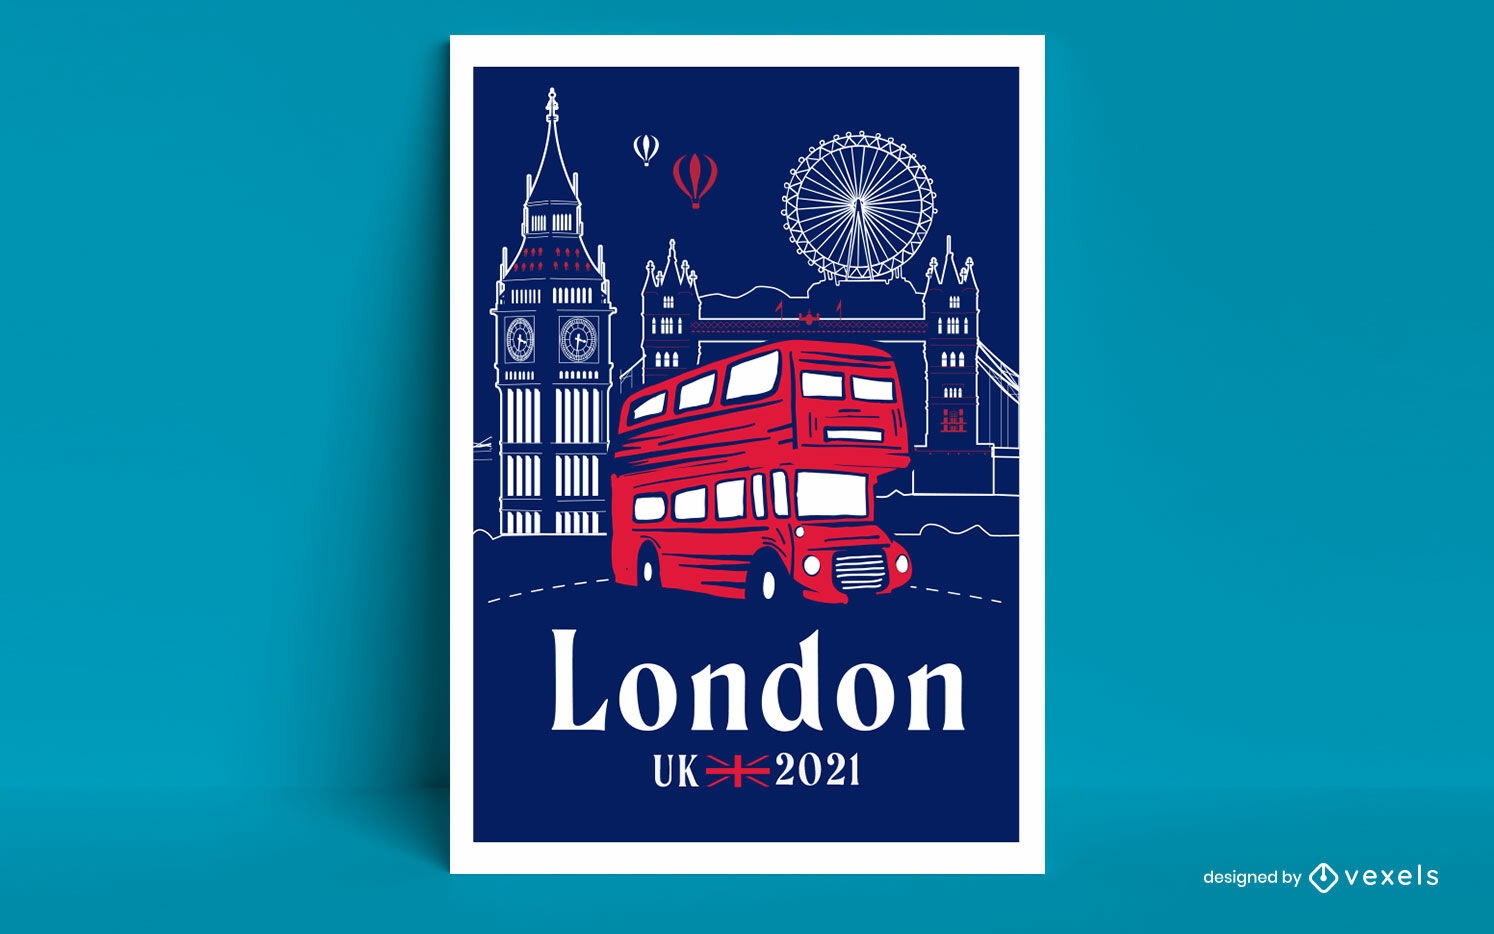 london tourist bus download